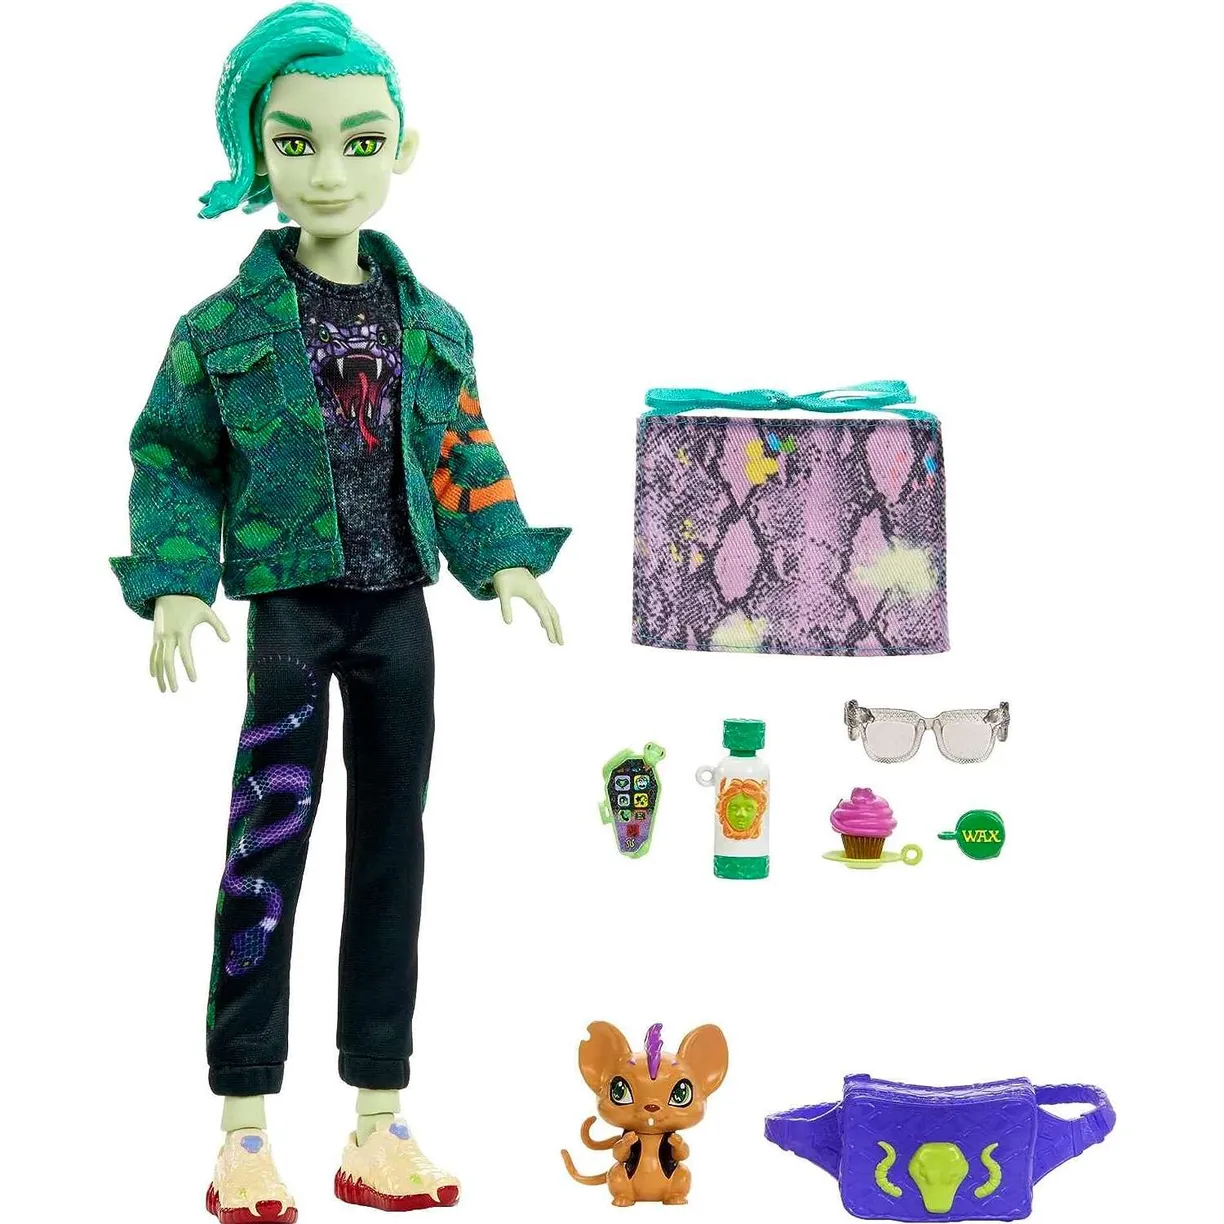 Кукла Monster High Deuce Gorgon Дьюс Горгон с питомцем и аксессуарами, HHK56 кукла monster high френки штейн пижамная вечеринка hky68